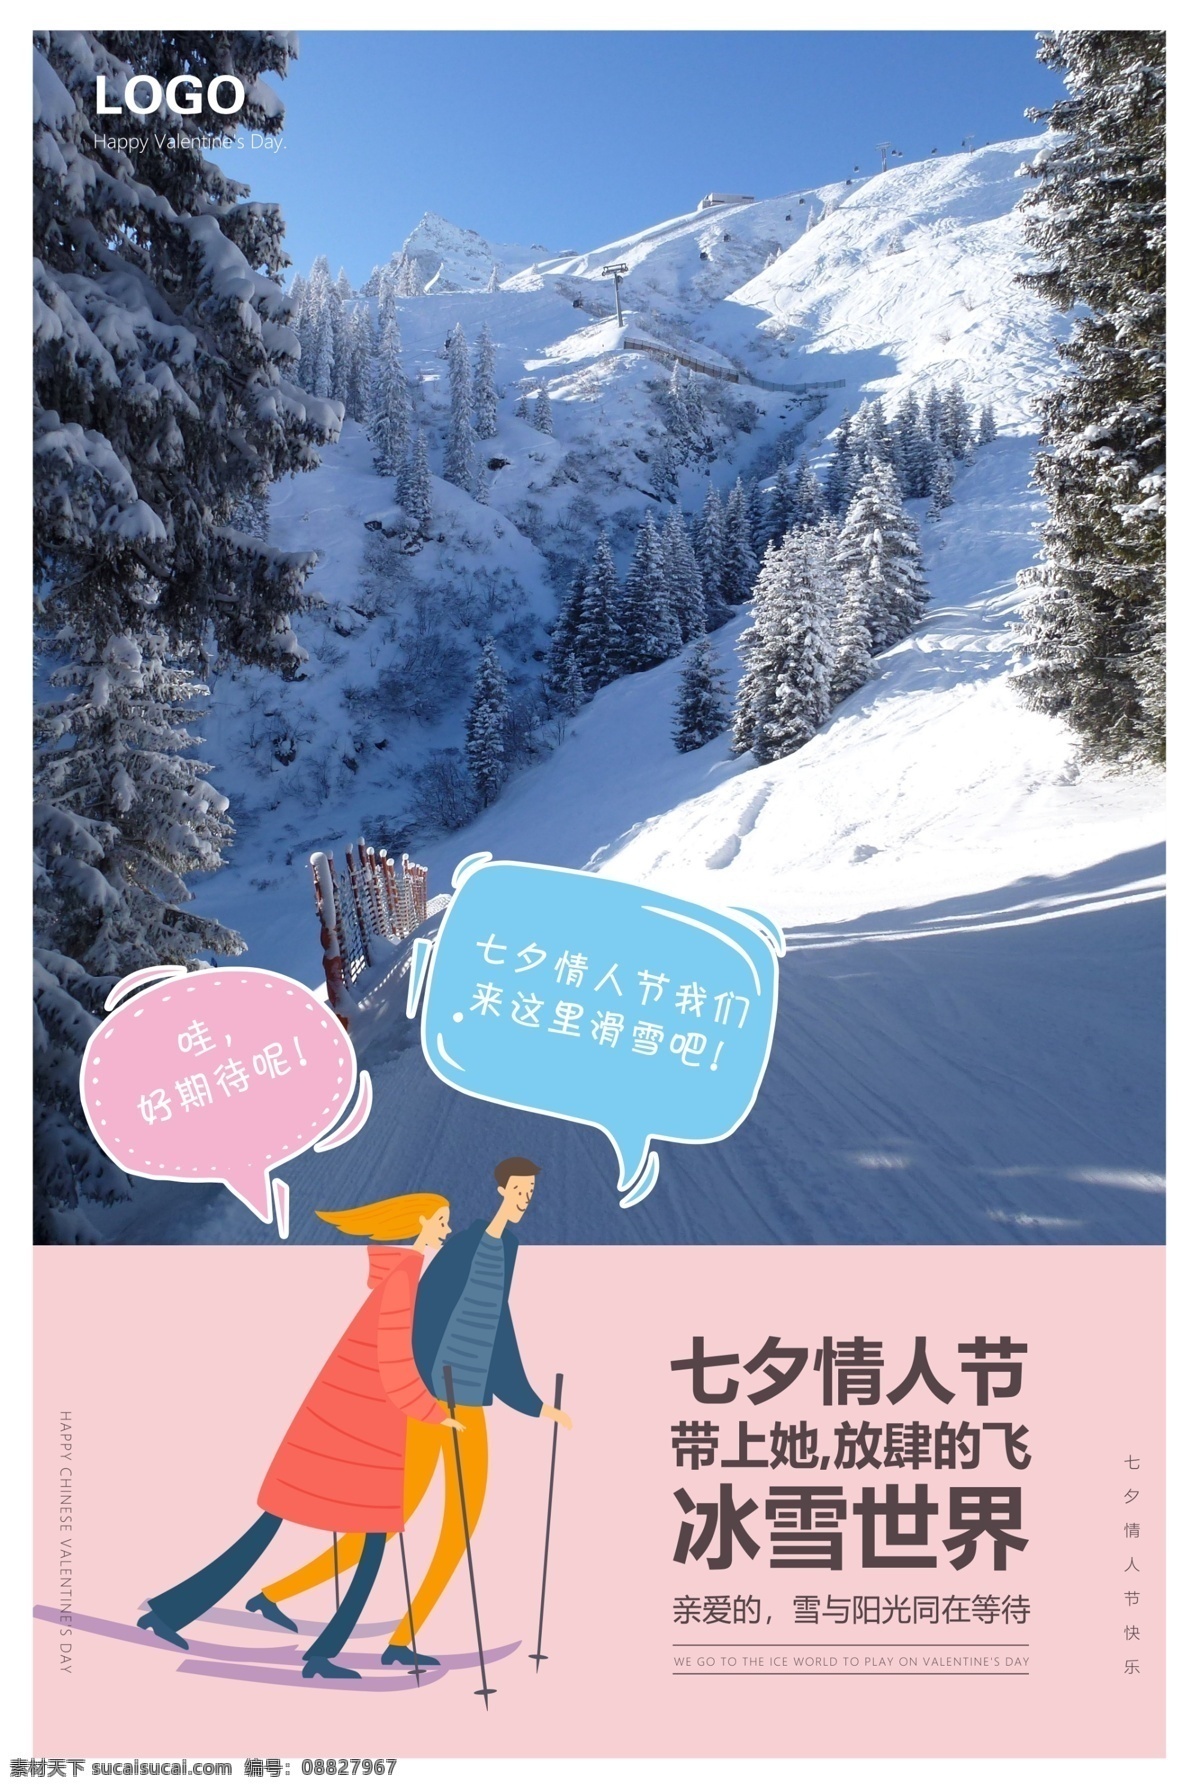 七夕 情人节 滑雪场 宣传海报 展板 分层 滑雪 海报 灯箱 激情滑雪 滑雪人物 滑雪体育 滑雪创新 极限滑雪 滑雪广告 滑雪精神 滑雪形象 滑雪比赛 露天滑雪